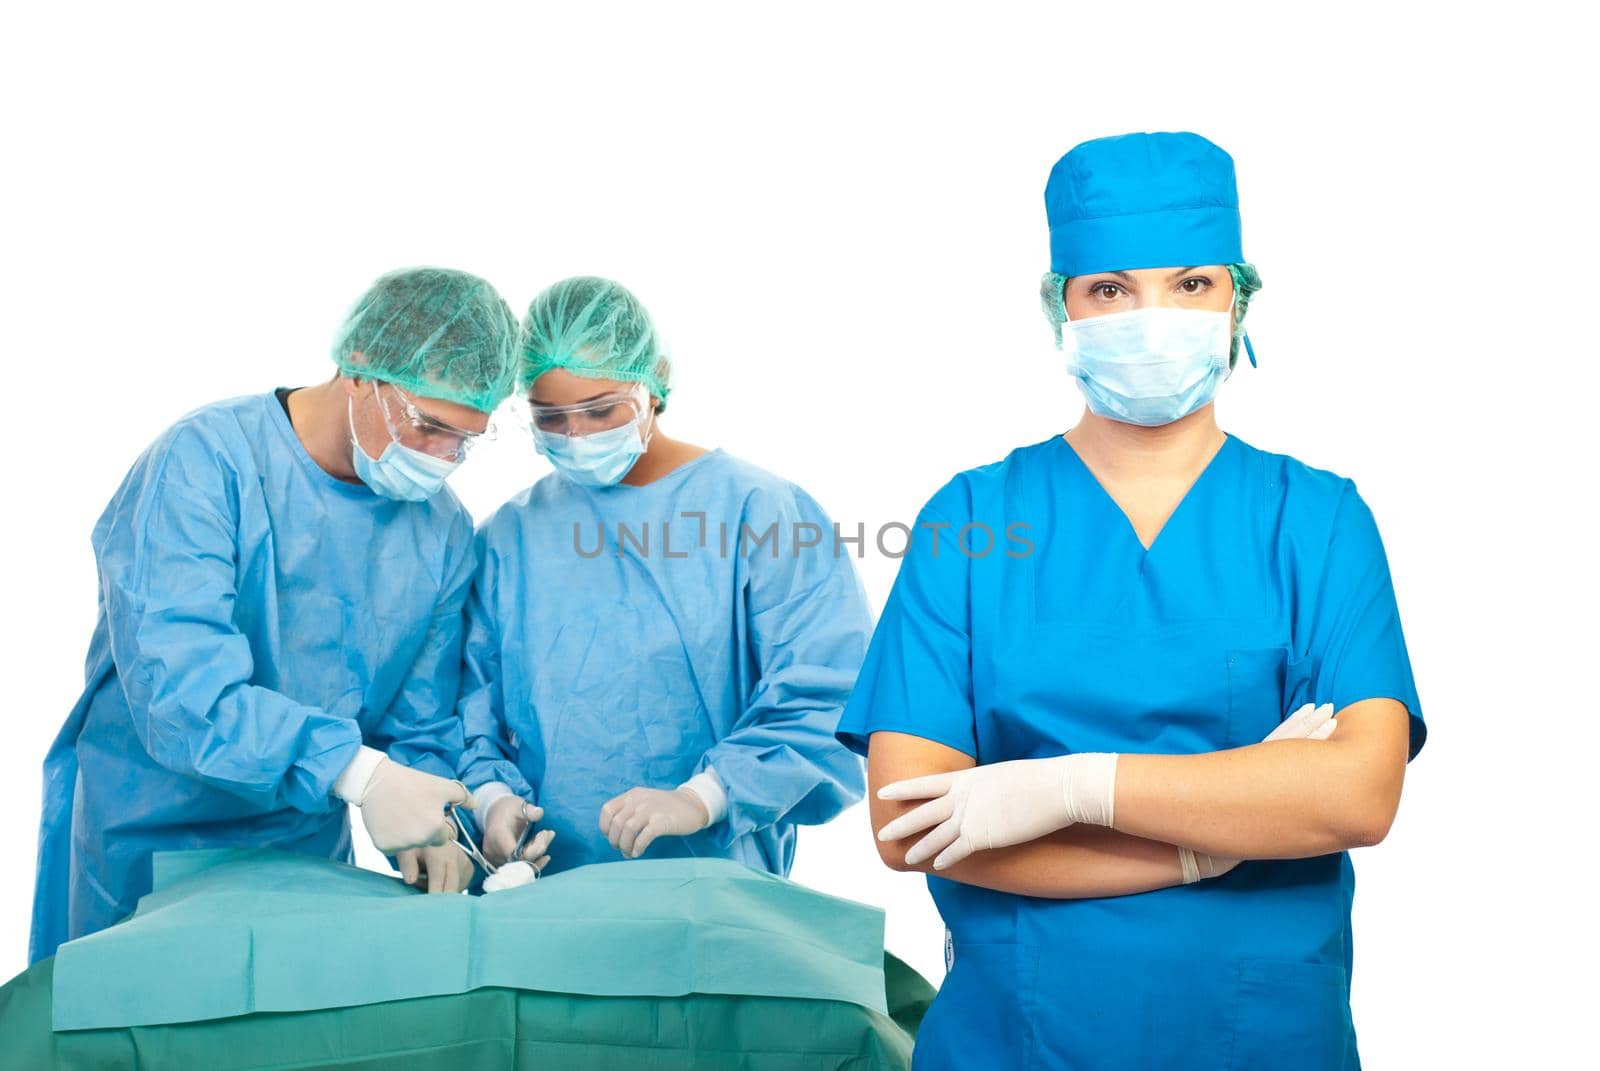 Surgeons team by justmeyo